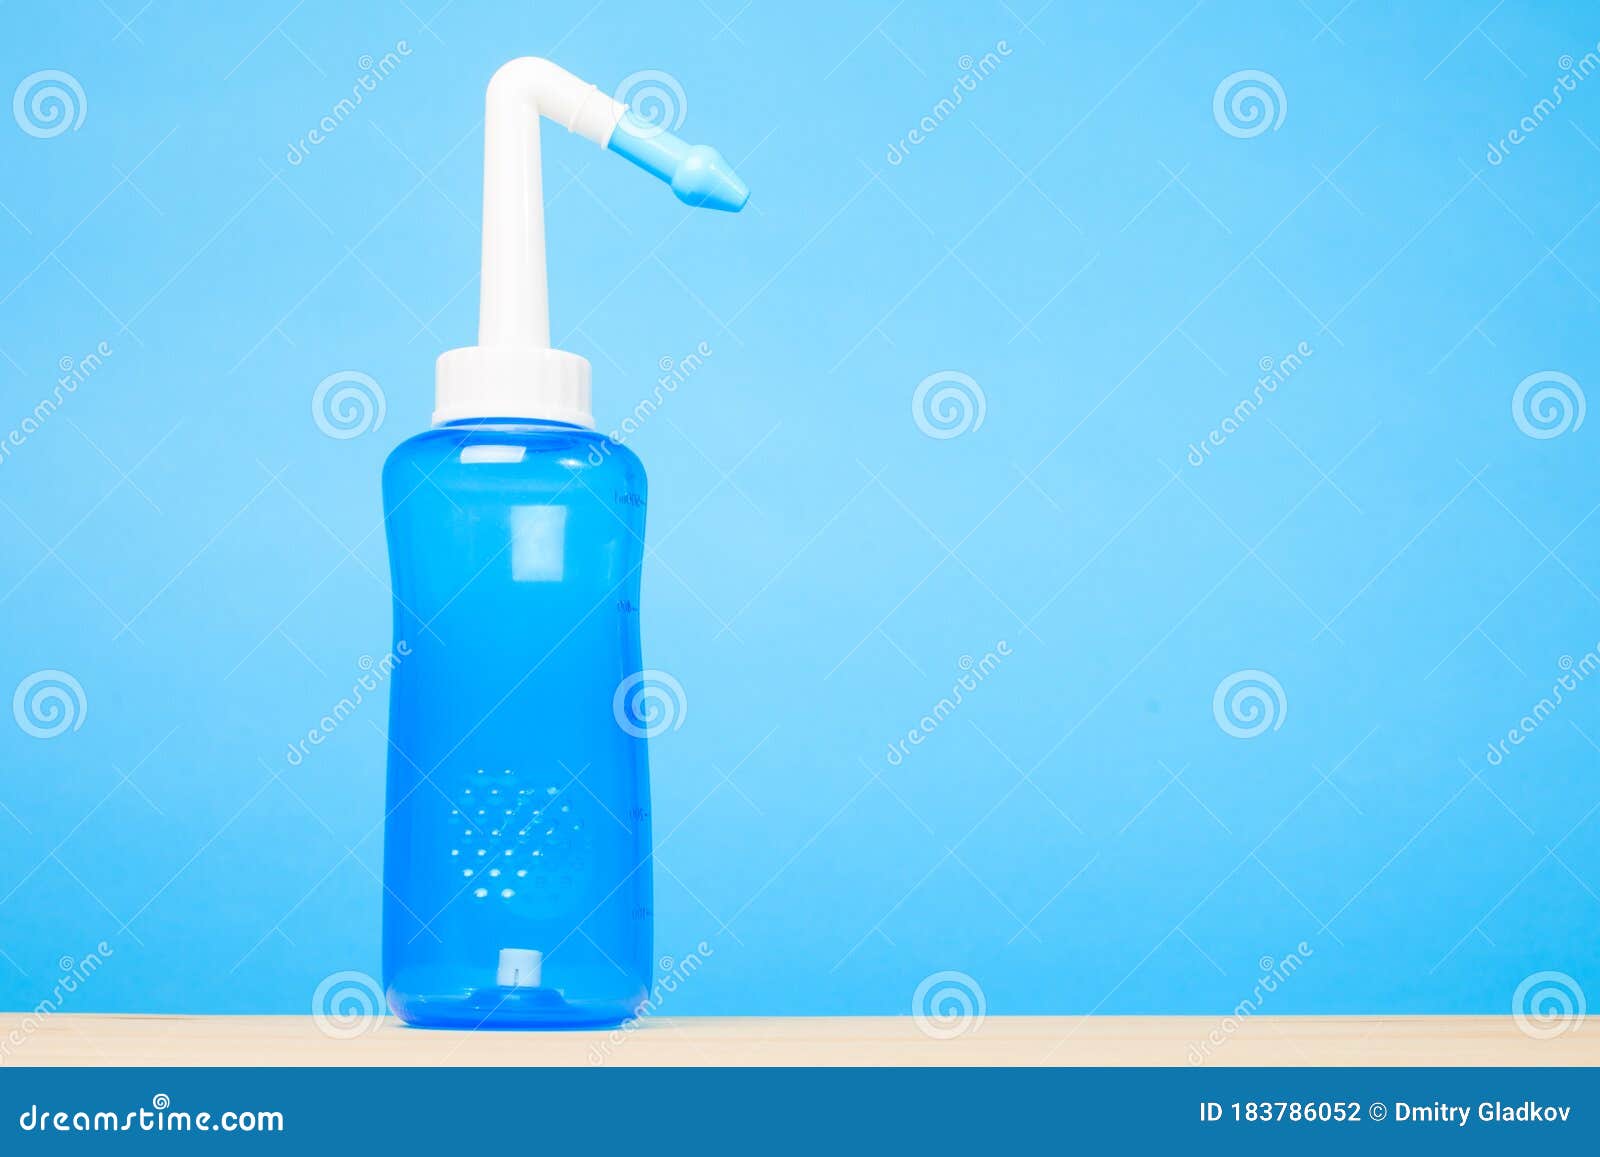 Agua Azul Pulso Botella De Lavado Nasal Sobre Fondo Azul Concepto De Riego  Nasal Foto de archivo - Imagen de medicina, sucio: 183786052